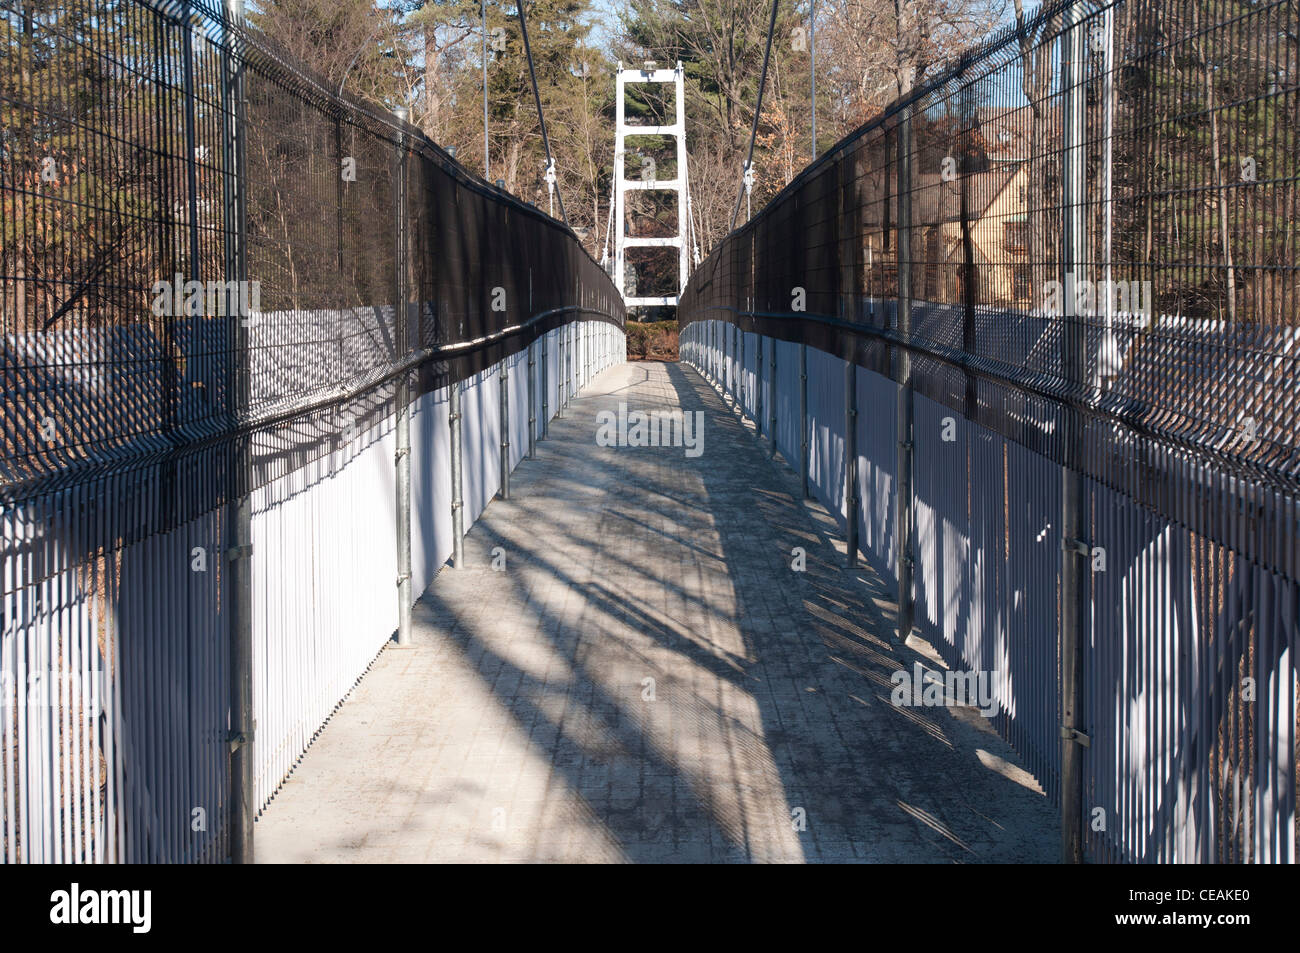 Hängebrücke über den Fall Creek mit zusätzlichen Zäunen, Selbstmorde zu schützen. Cornell University, Ithaca, New York, USA Stockfoto